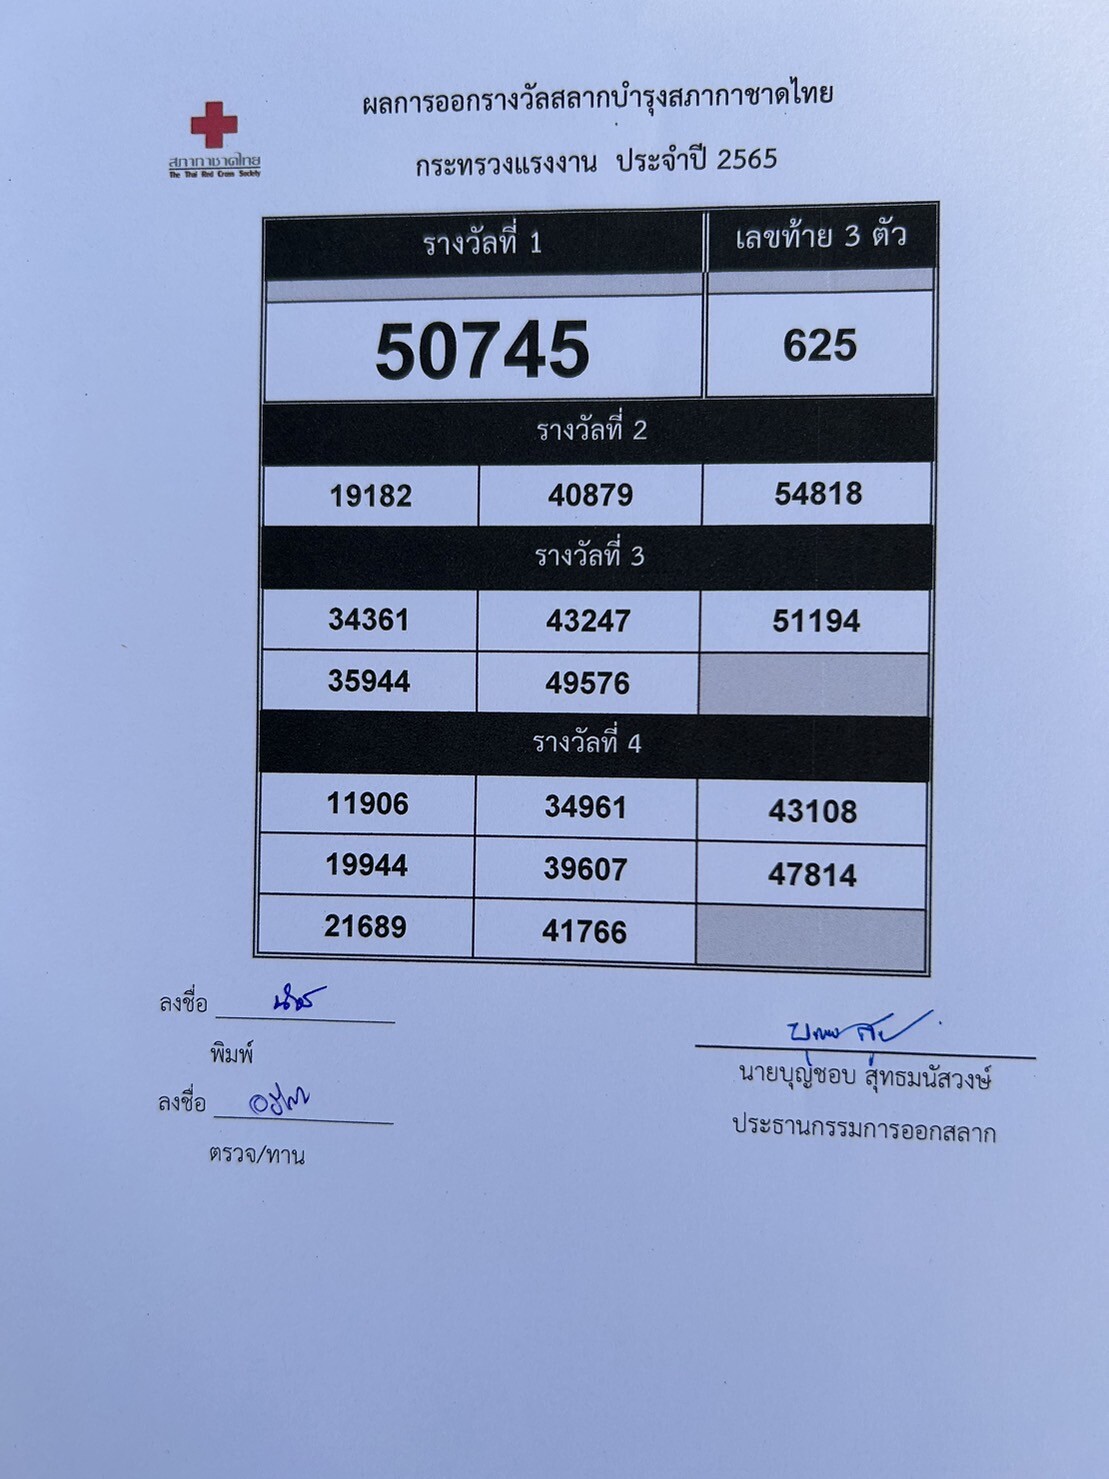 ผลการออกรางวัลสลากกาชาดไทย "บัตรแรงงานเชิญรับโชค" กระทรวงแรงงาน ประจำปี 2565